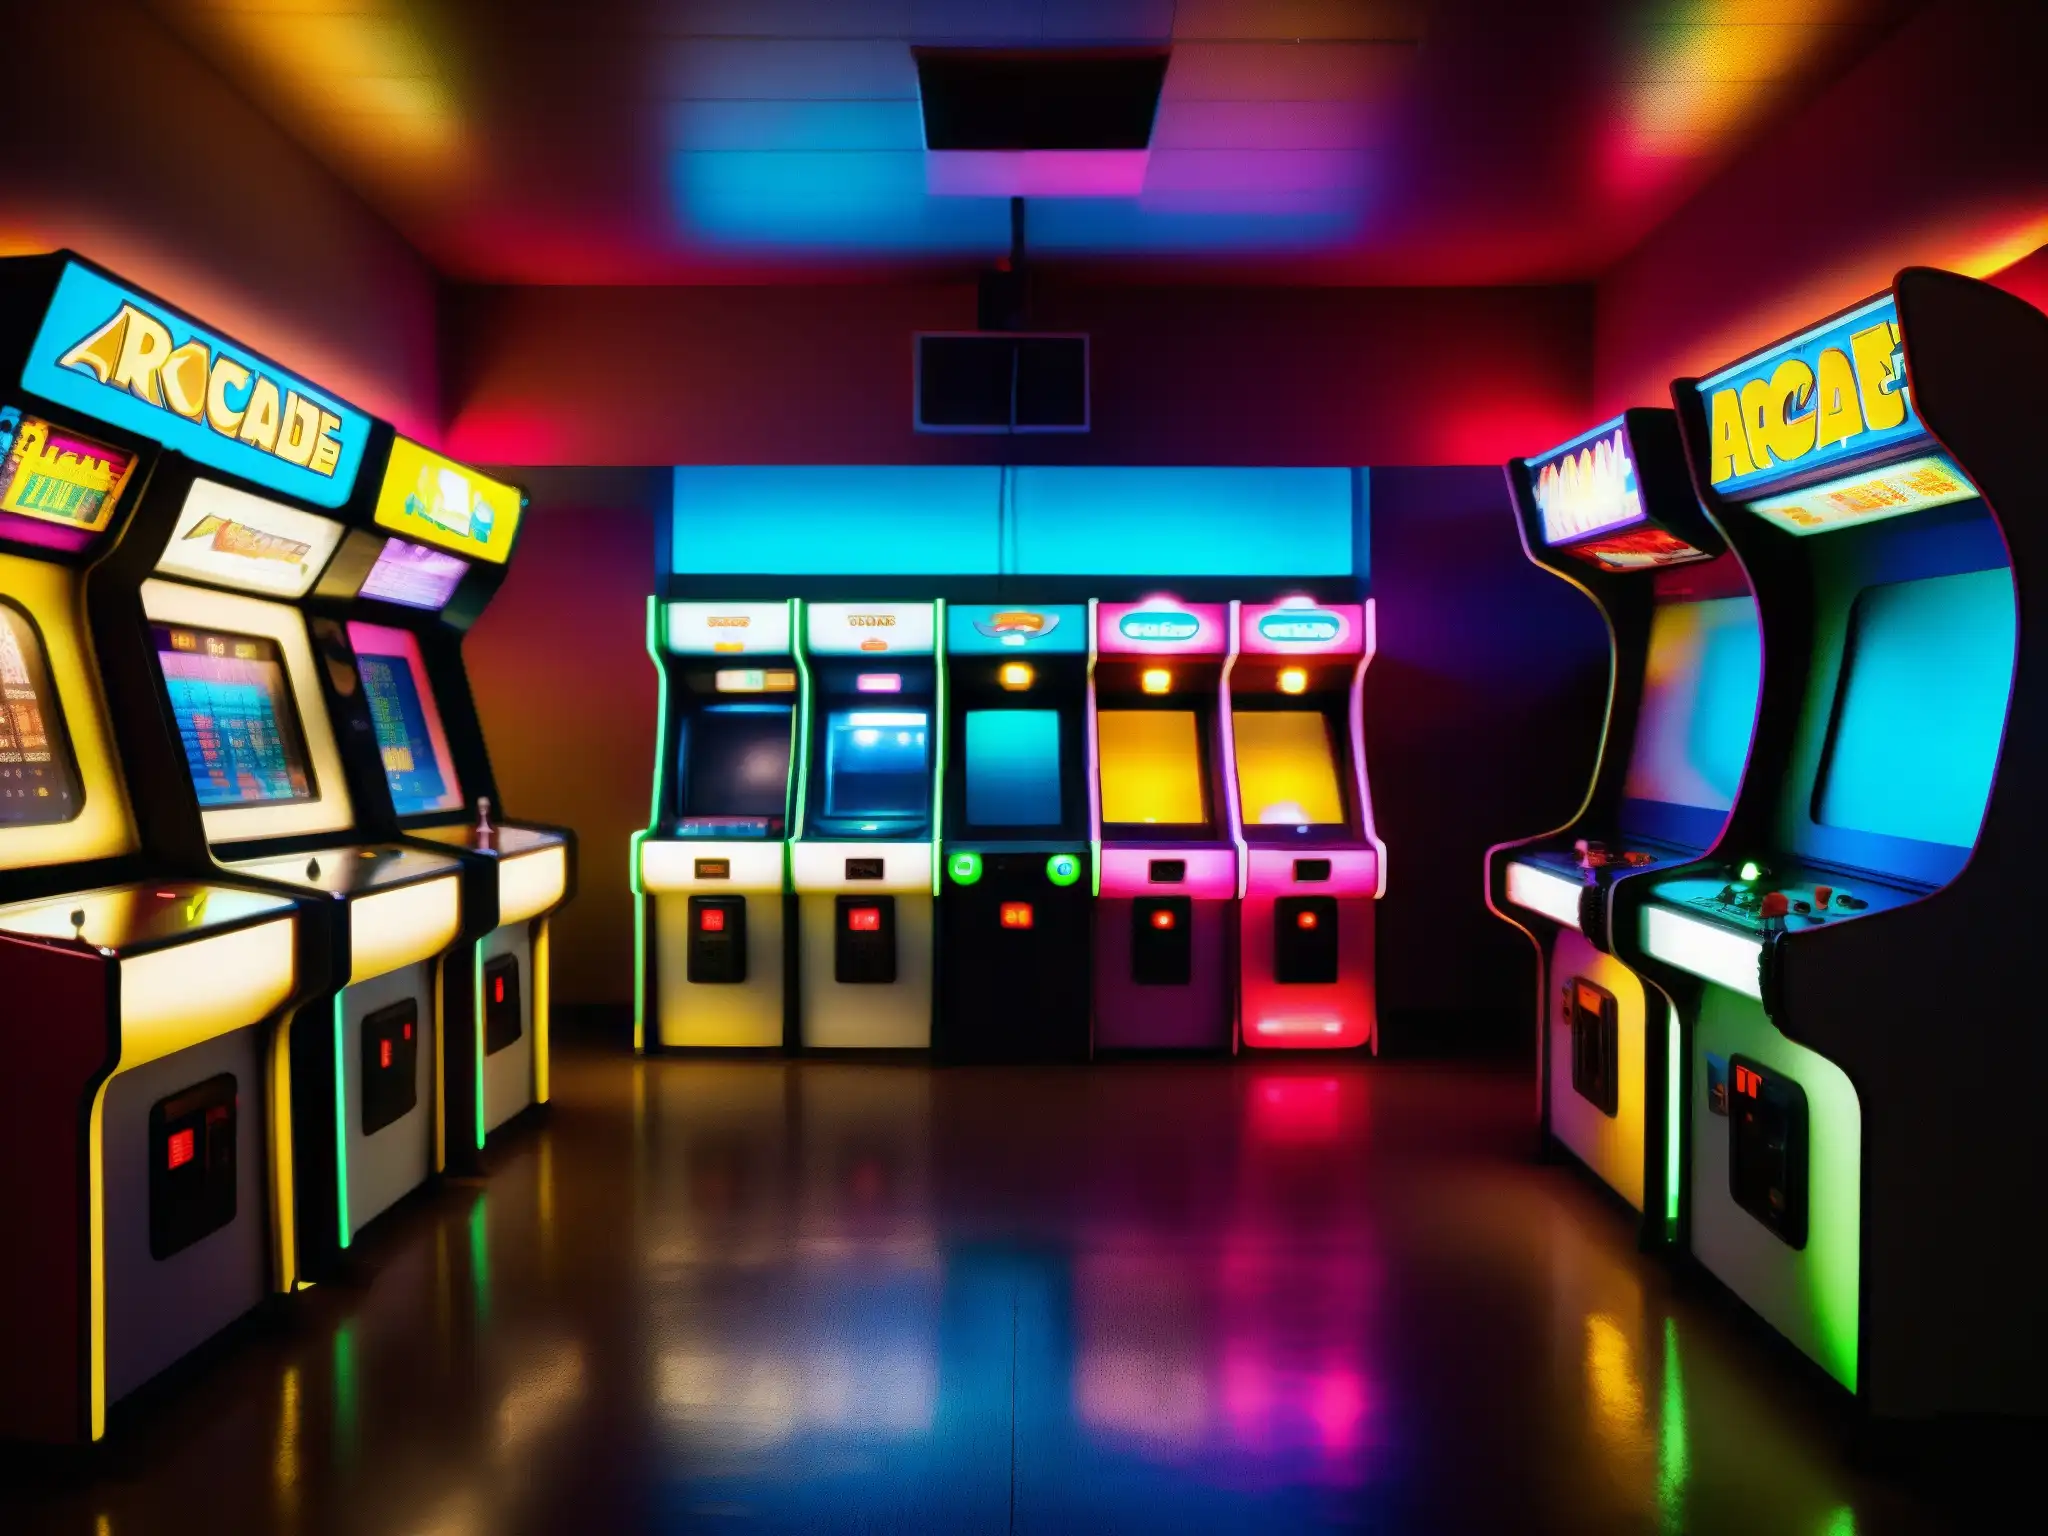 Un fascinante arcade de los años 80, con misteriosas máquinas brillantes y un ambiente nostálgico